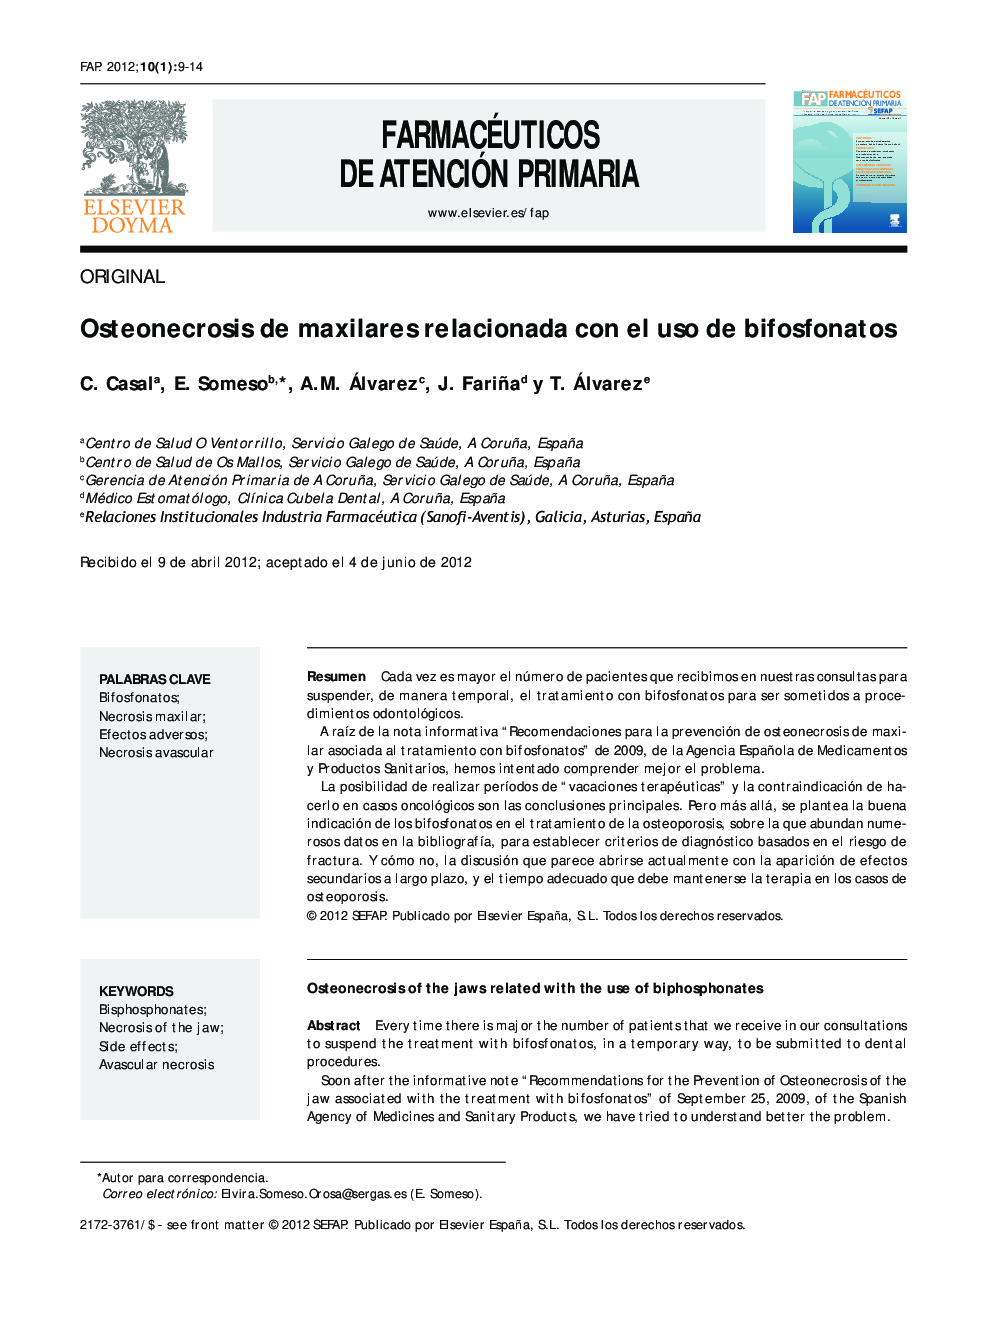 Osteonecrosis de maxilares relacionada con el uso de bifosfonatos